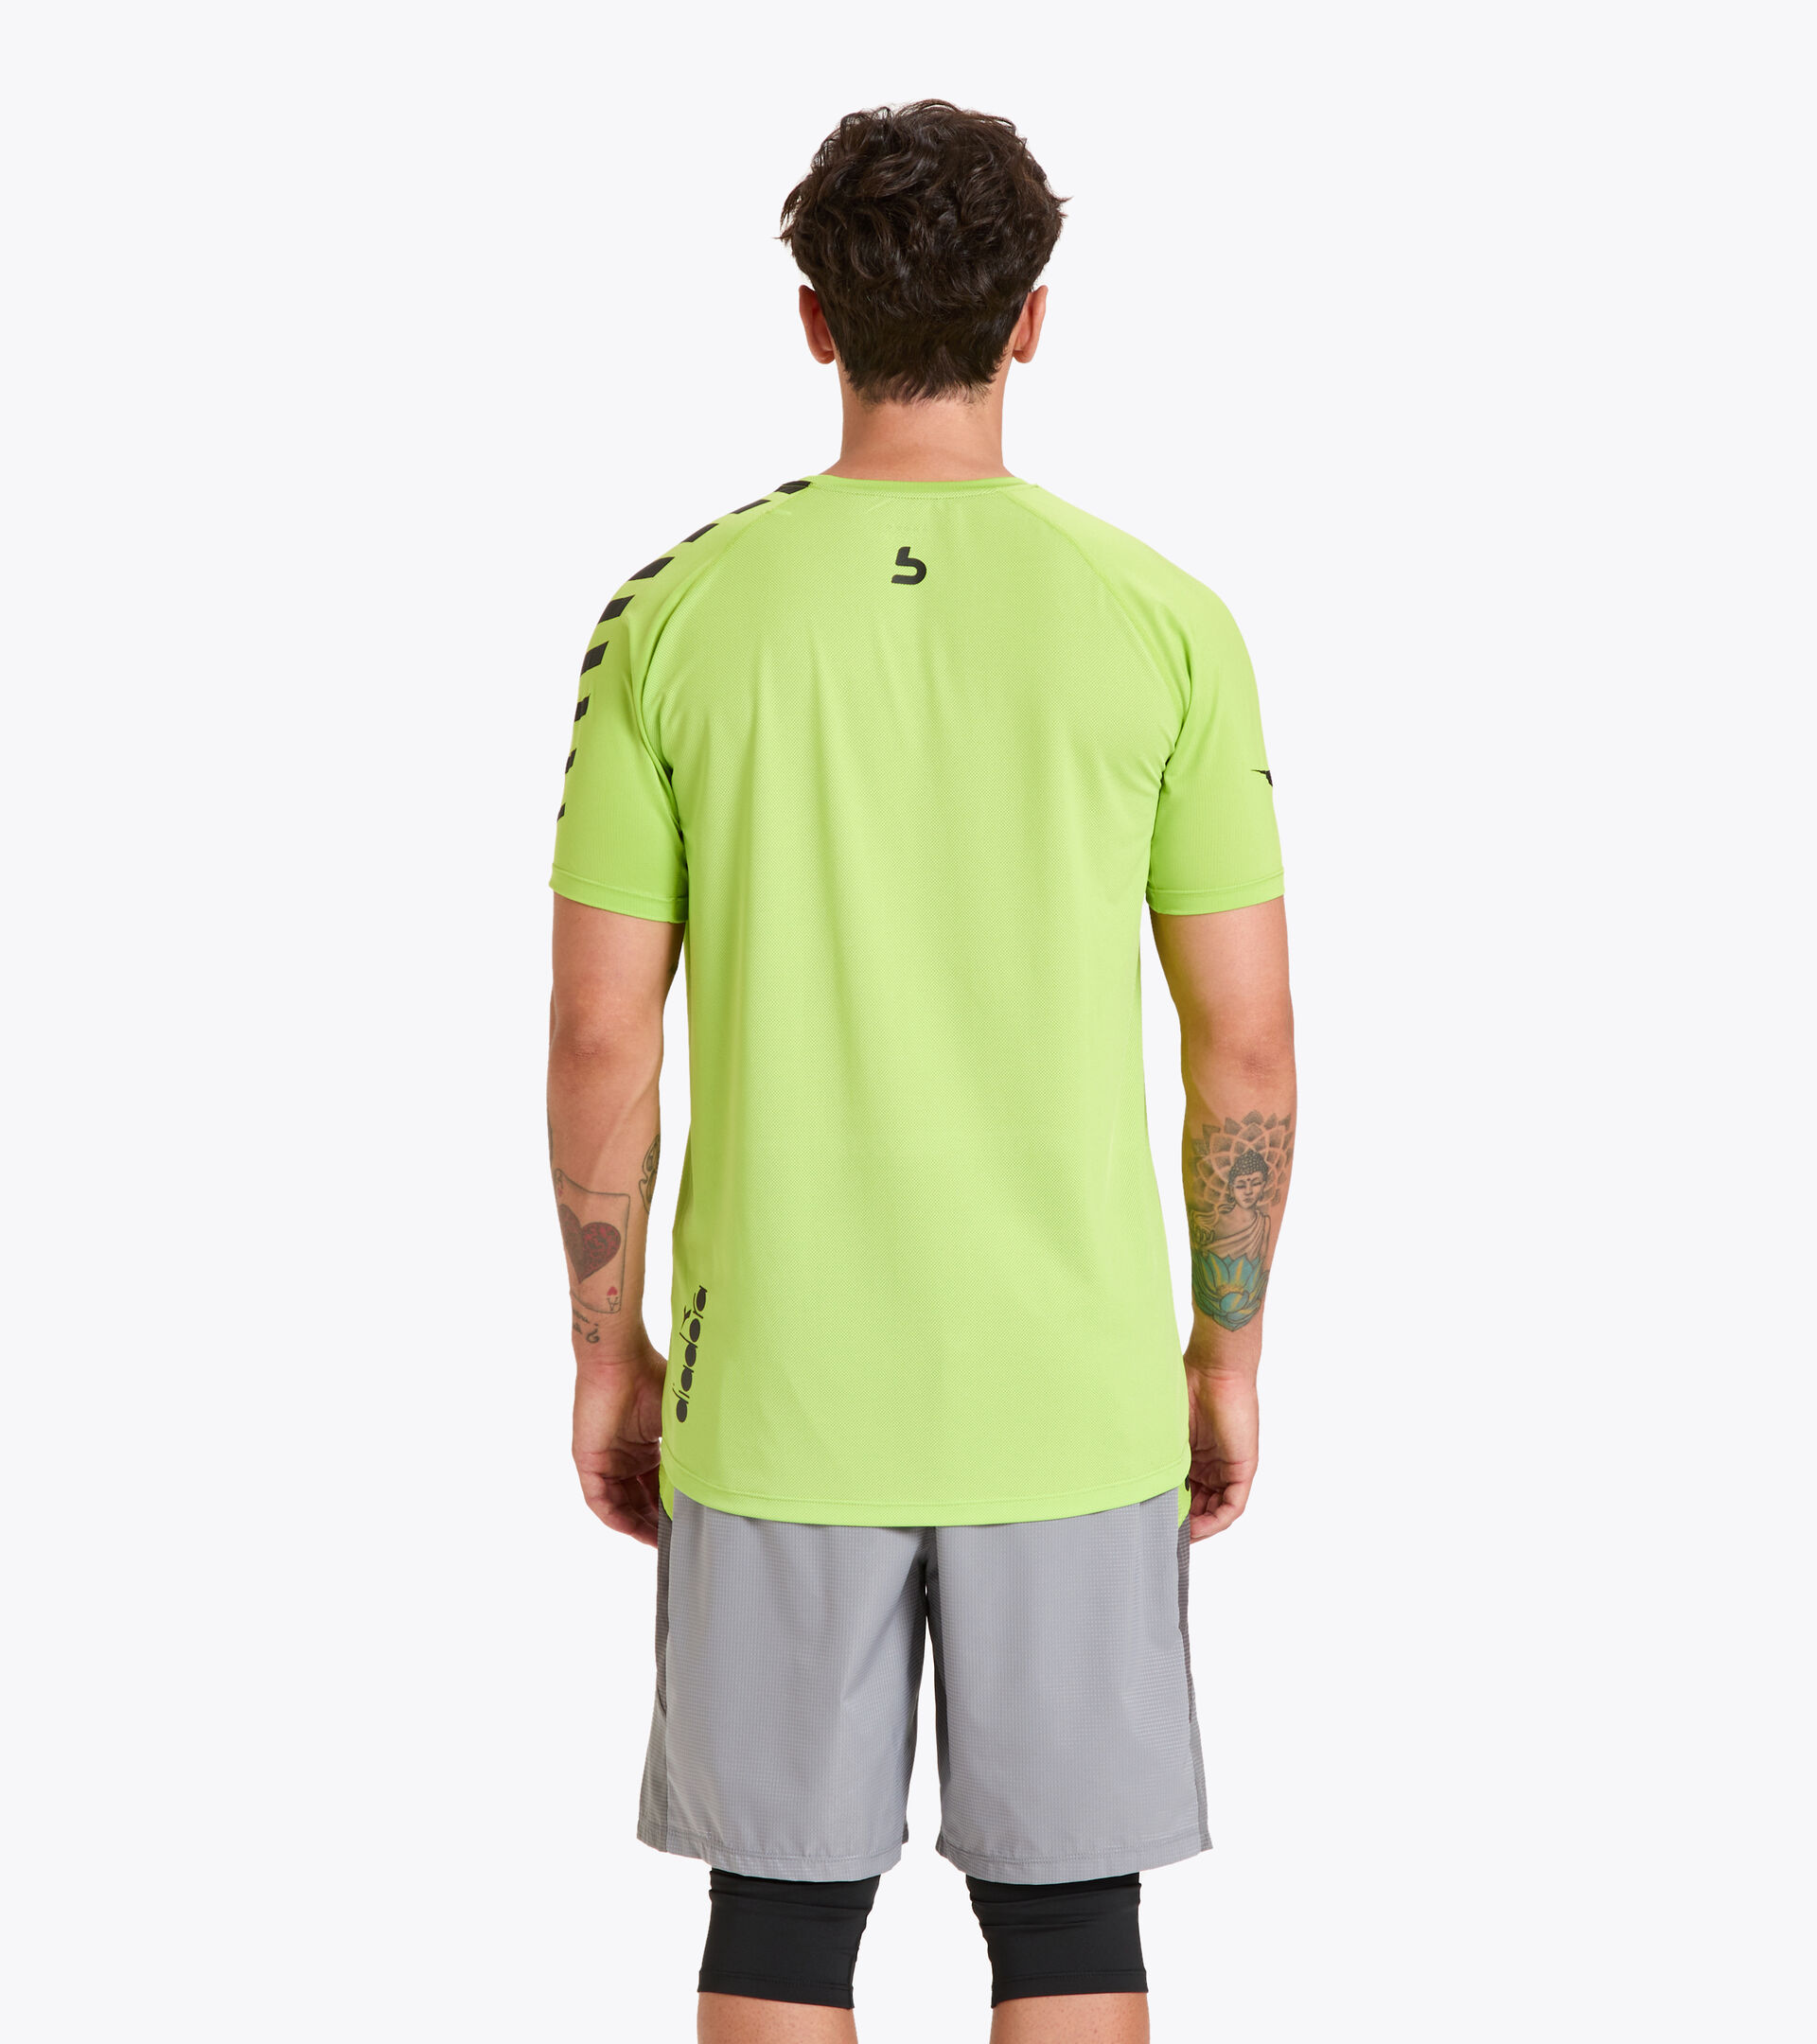 Workout-T-Shirt for men SS SUPER LIGHT T-SHIRT BUDDYFIT LIME GREEN - Diadora